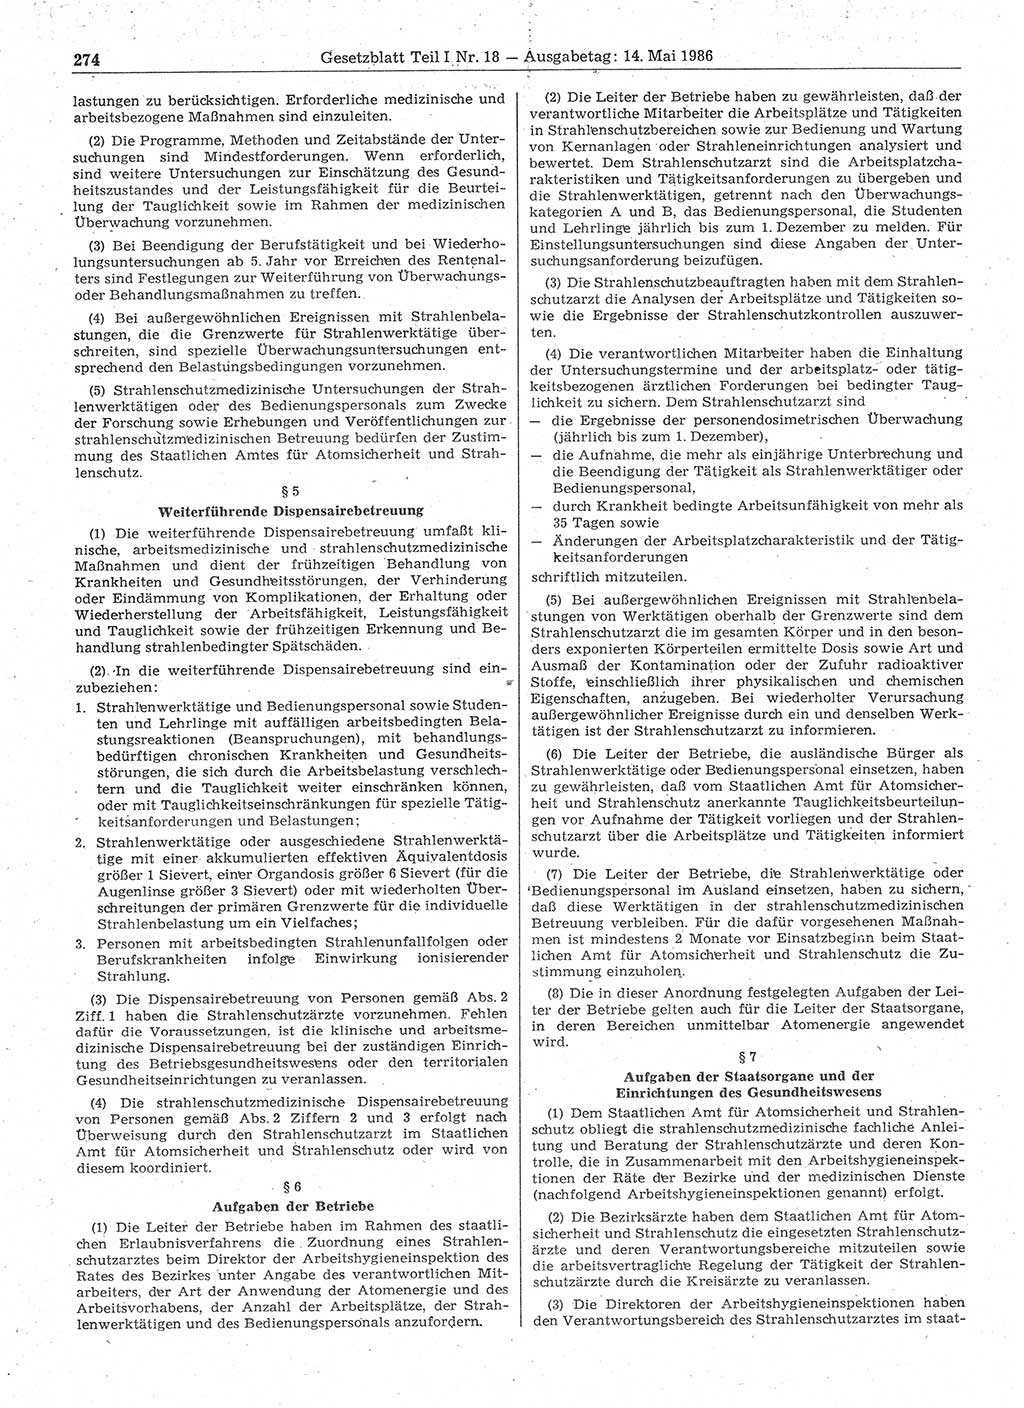 Gesetzblatt (GBl.) der Deutschen Demokratischen Republik (DDR) Teil Ⅰ 1986, Seite 274 (GBl. DDR Ⅰ 1986, S. 274)